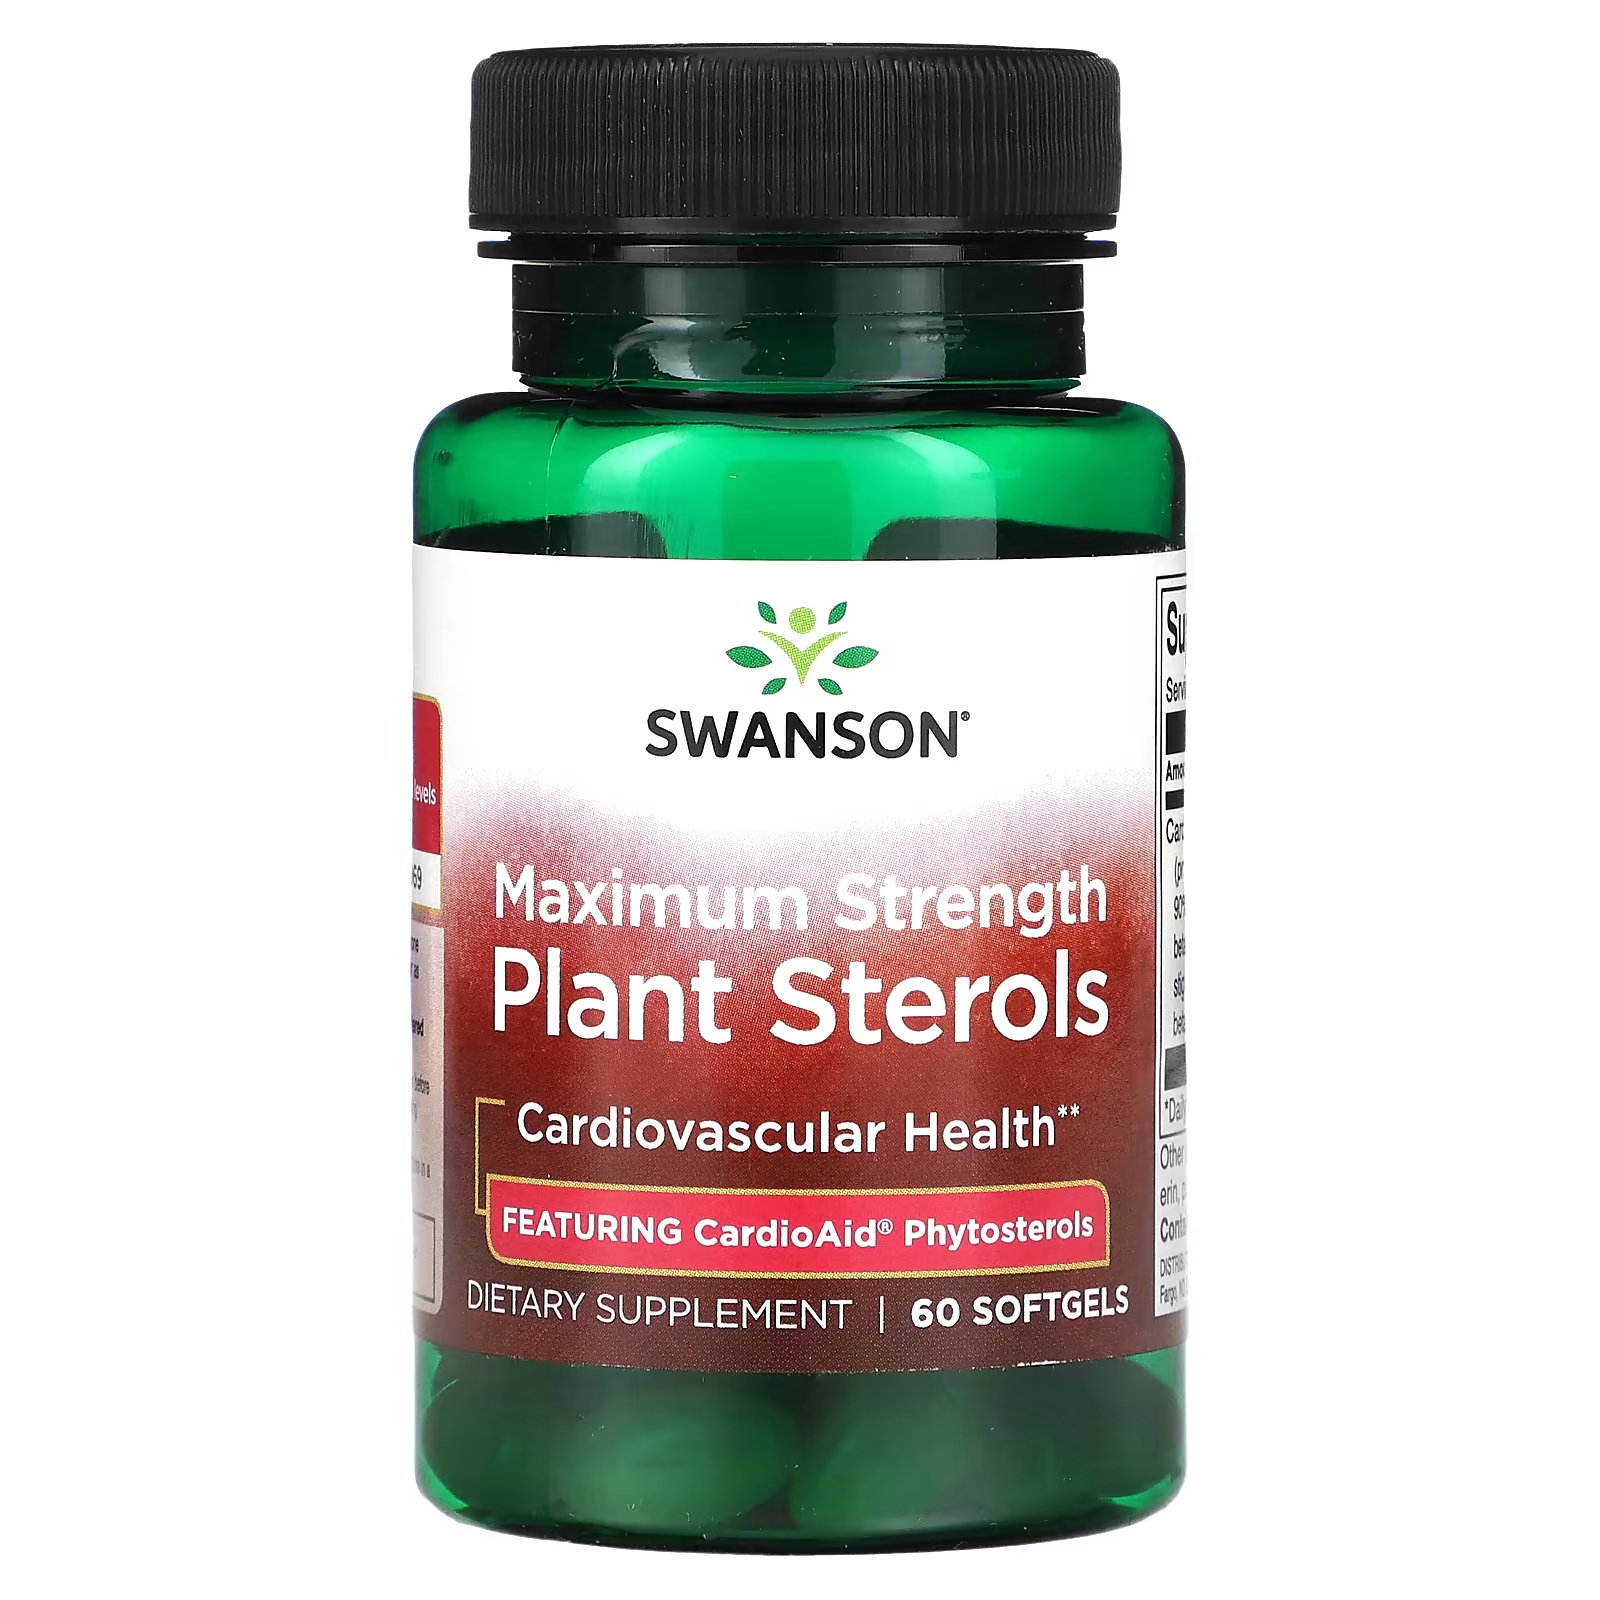 Растительные стерины Swanson максимальной силы, 60 мягких таблеток пищевая добавка для балансировки крови поддерживает сердечно сосудистое заболевание добавление витаминов и общее процветание